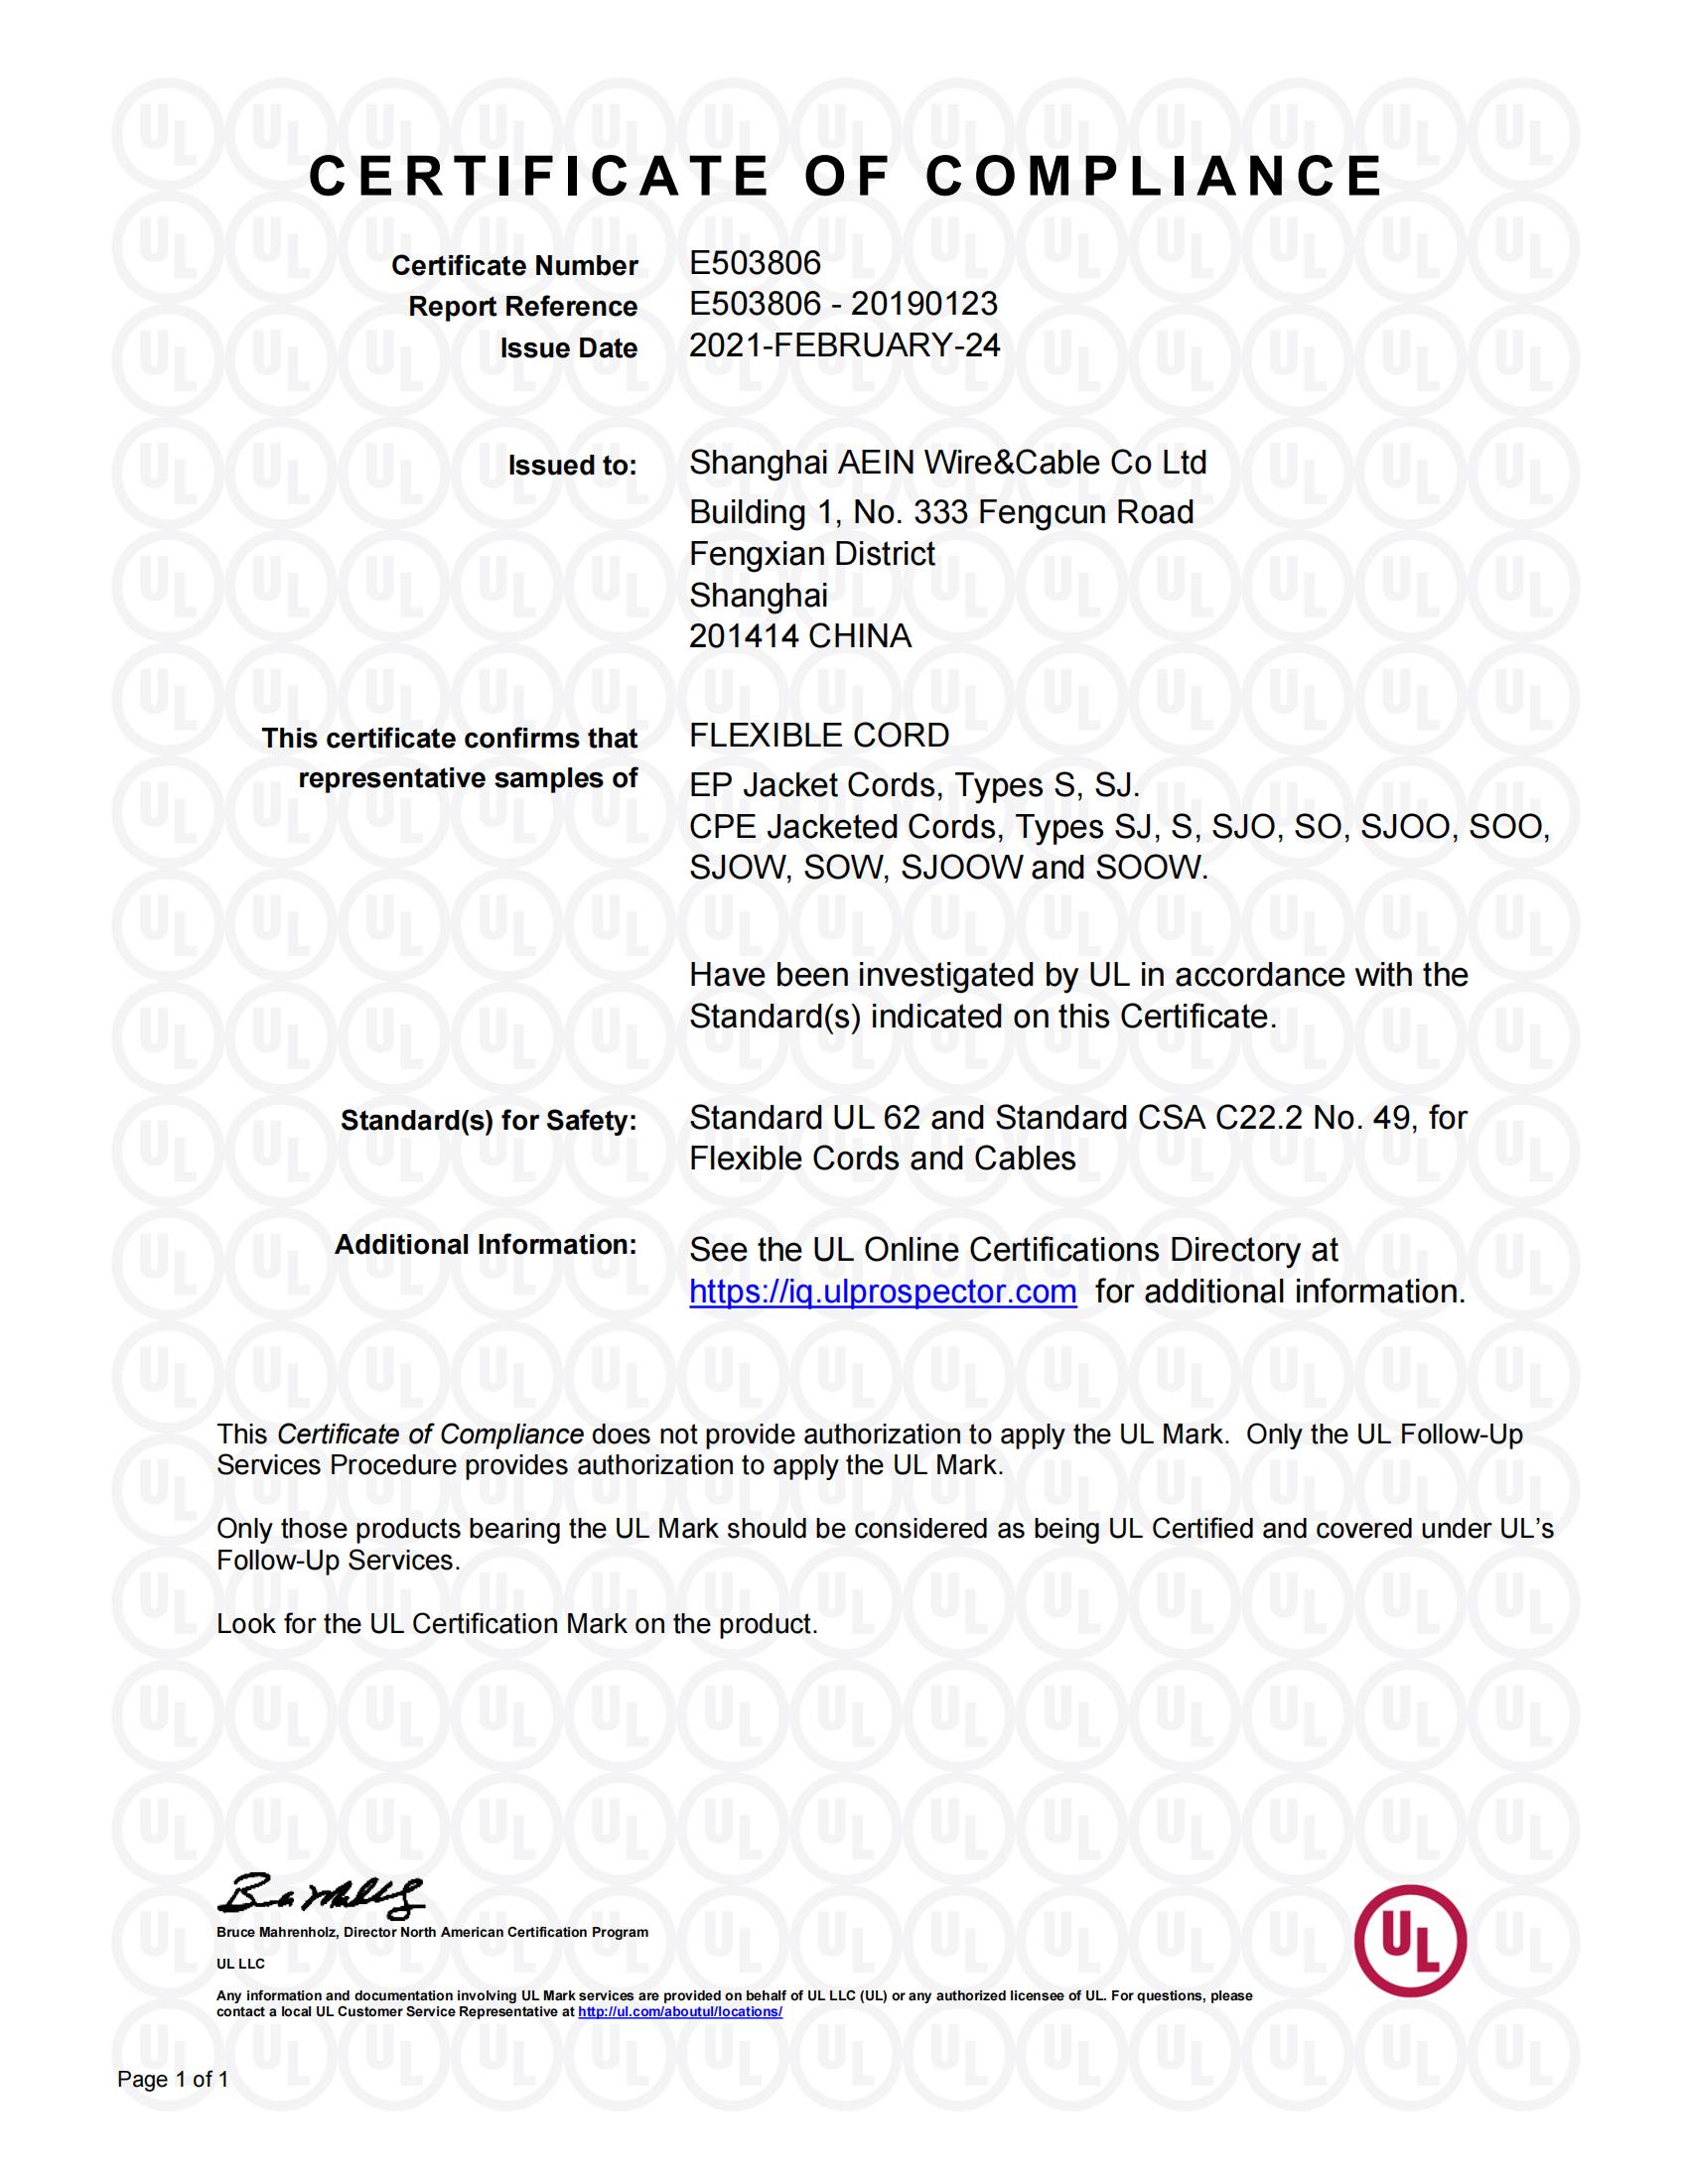 美标UL62标准认证证书